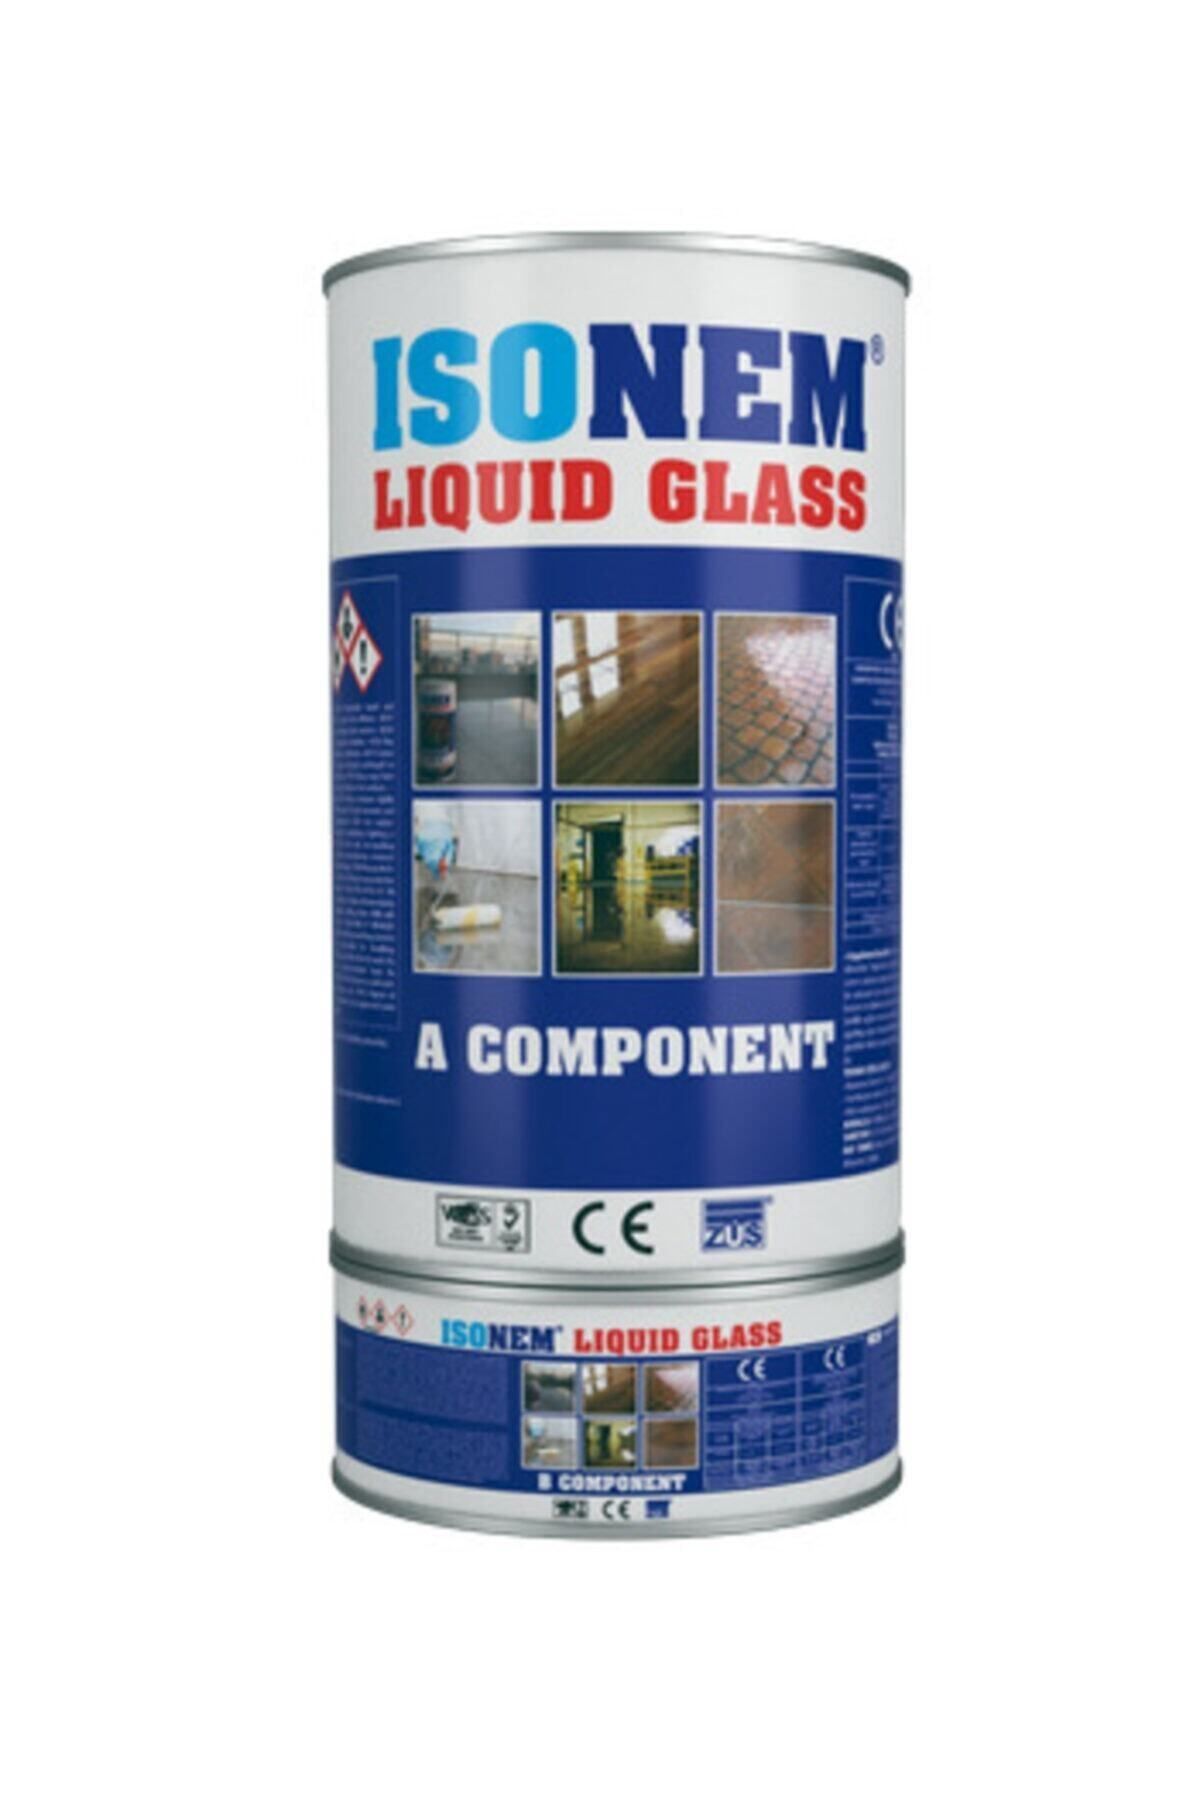 İsonem Boya & Yalıtım Teknolojileri Isonem Lıquıd Glass - Isonem Sıvıcam 2kg